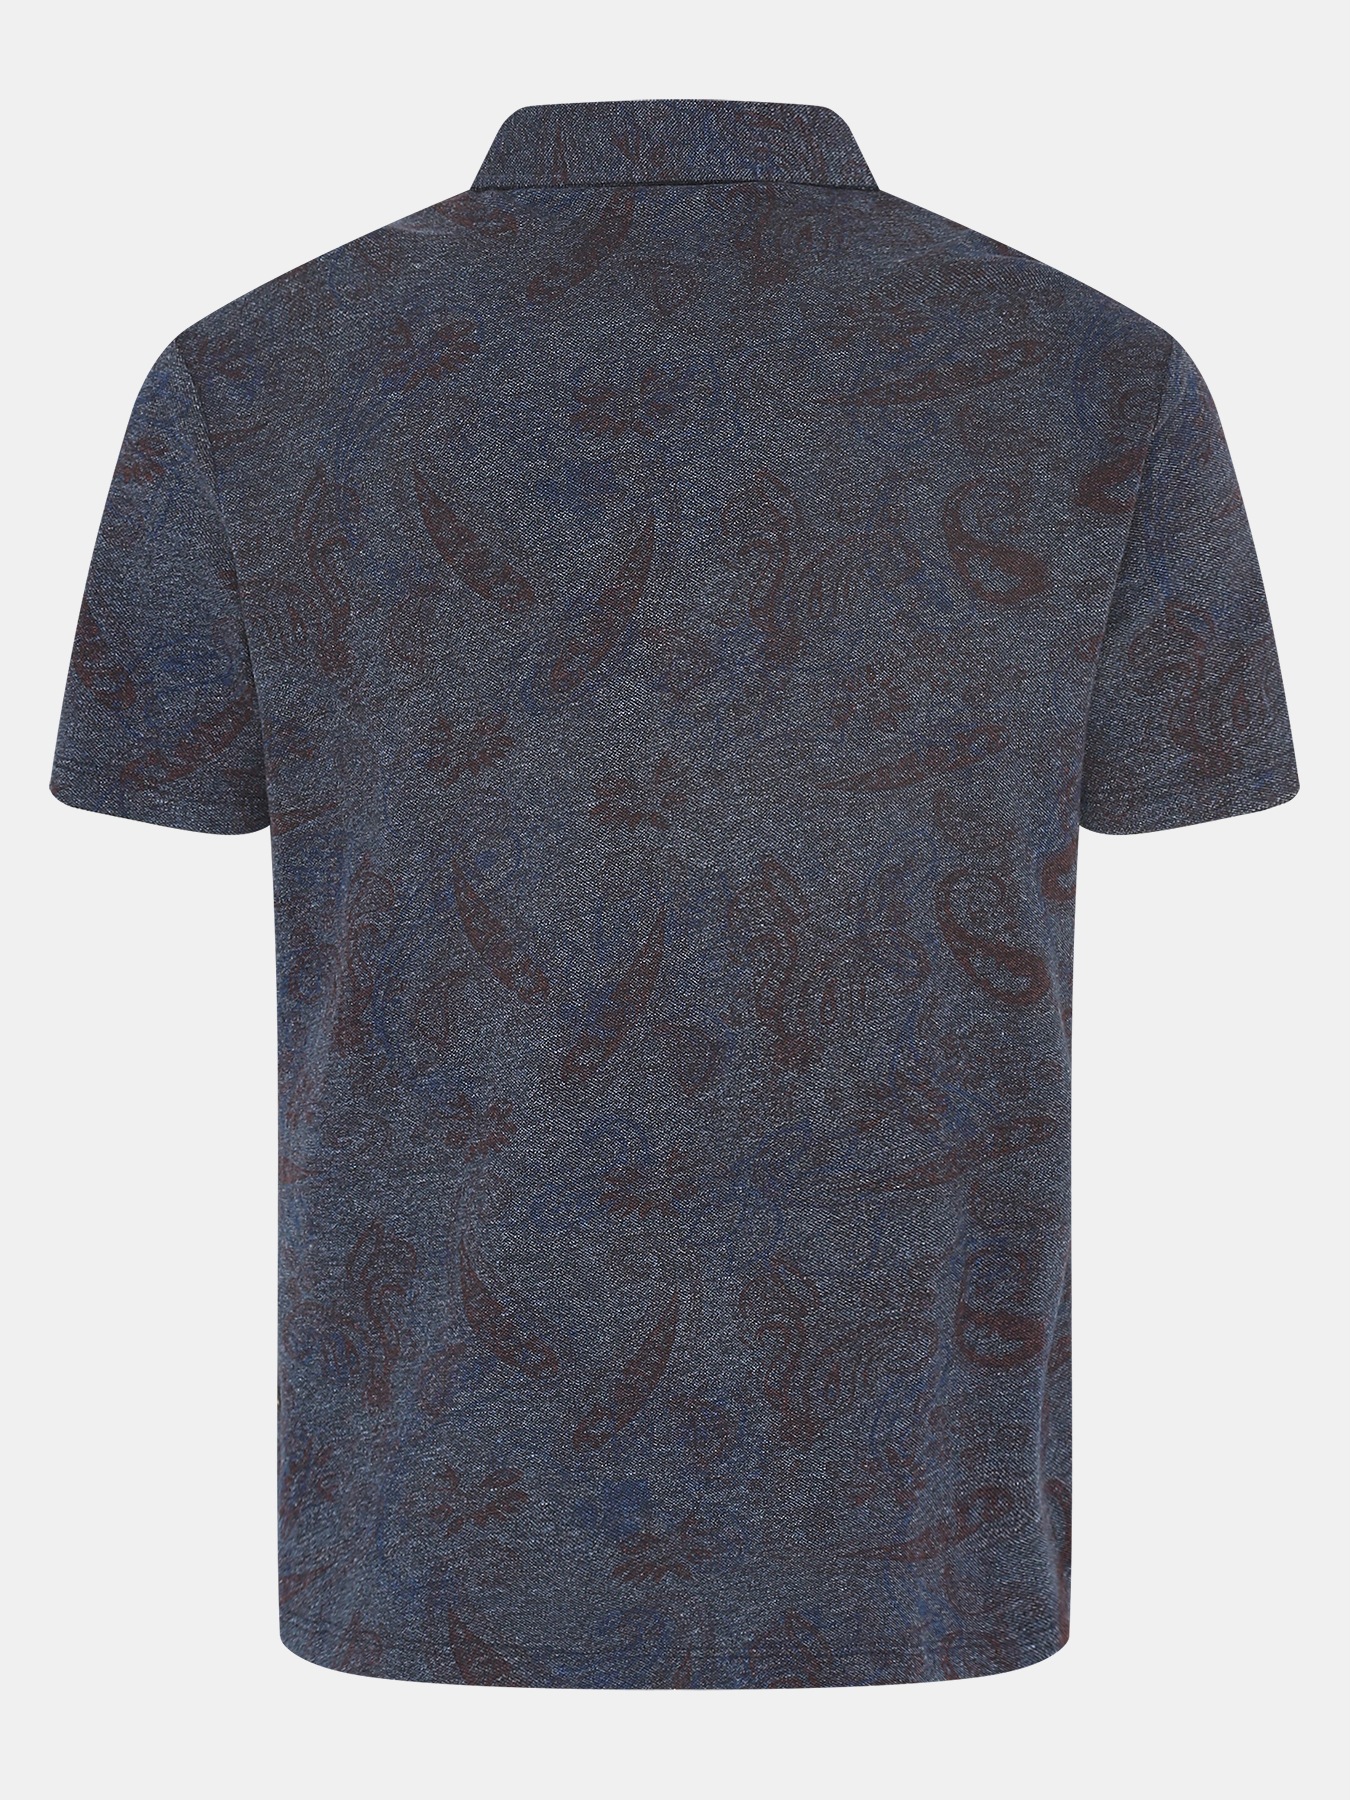 Рубашка Alessandro Manzoni 402627-028, цвет темно-синий, размер 54 - фото 3